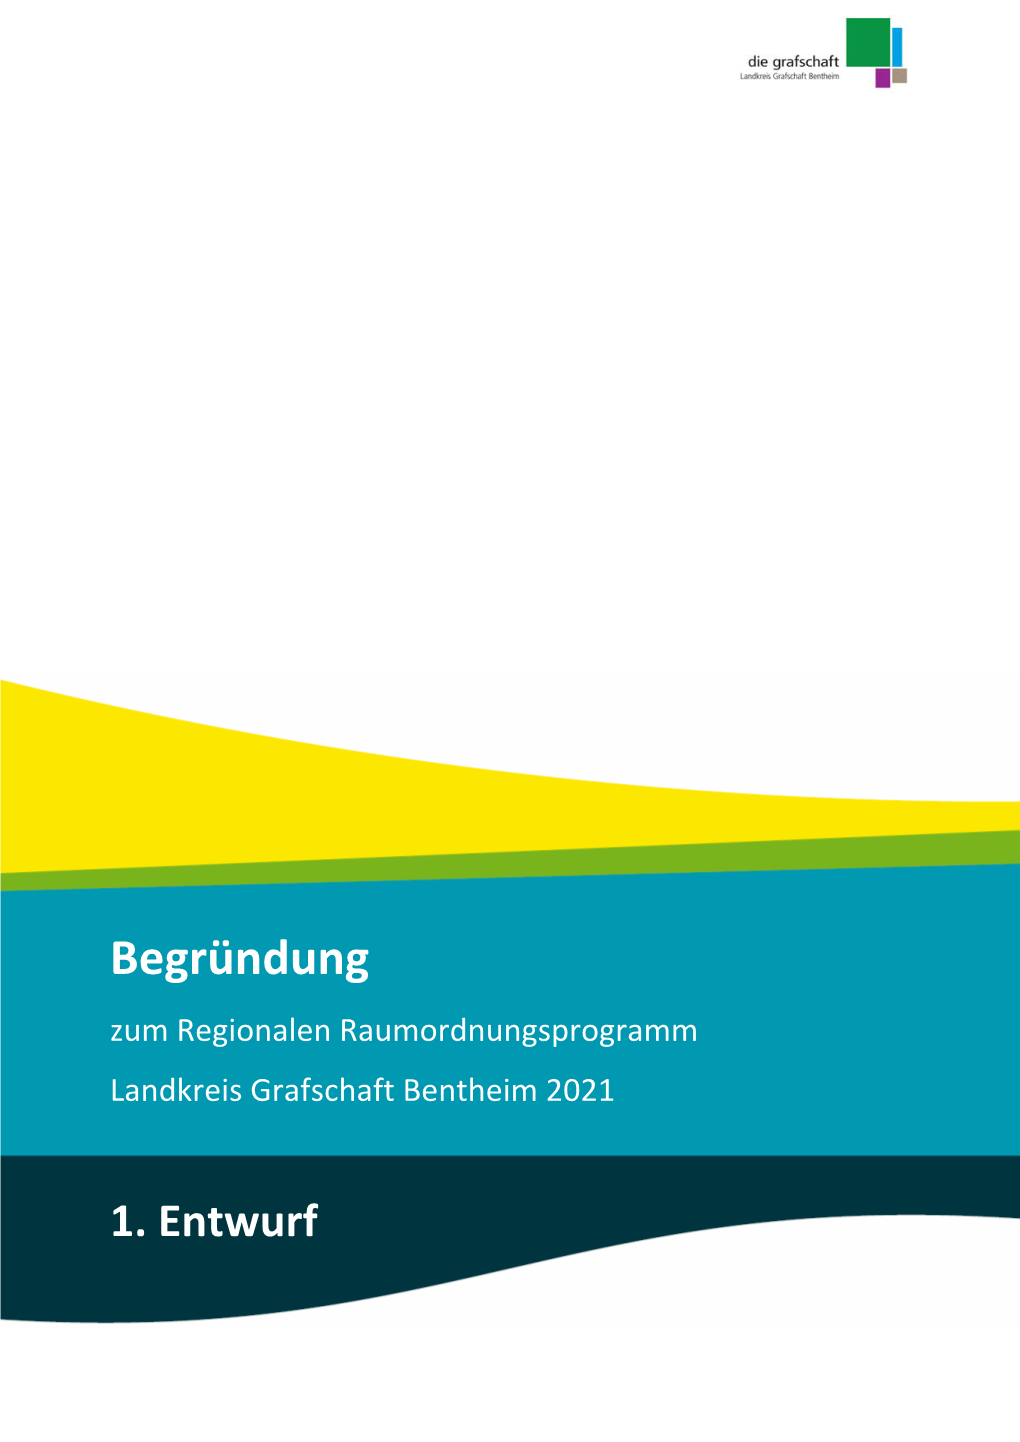 Begründung Zum Regionalen Raumordnungsprogramm Landkreis Grafschaft Bentheim 2021